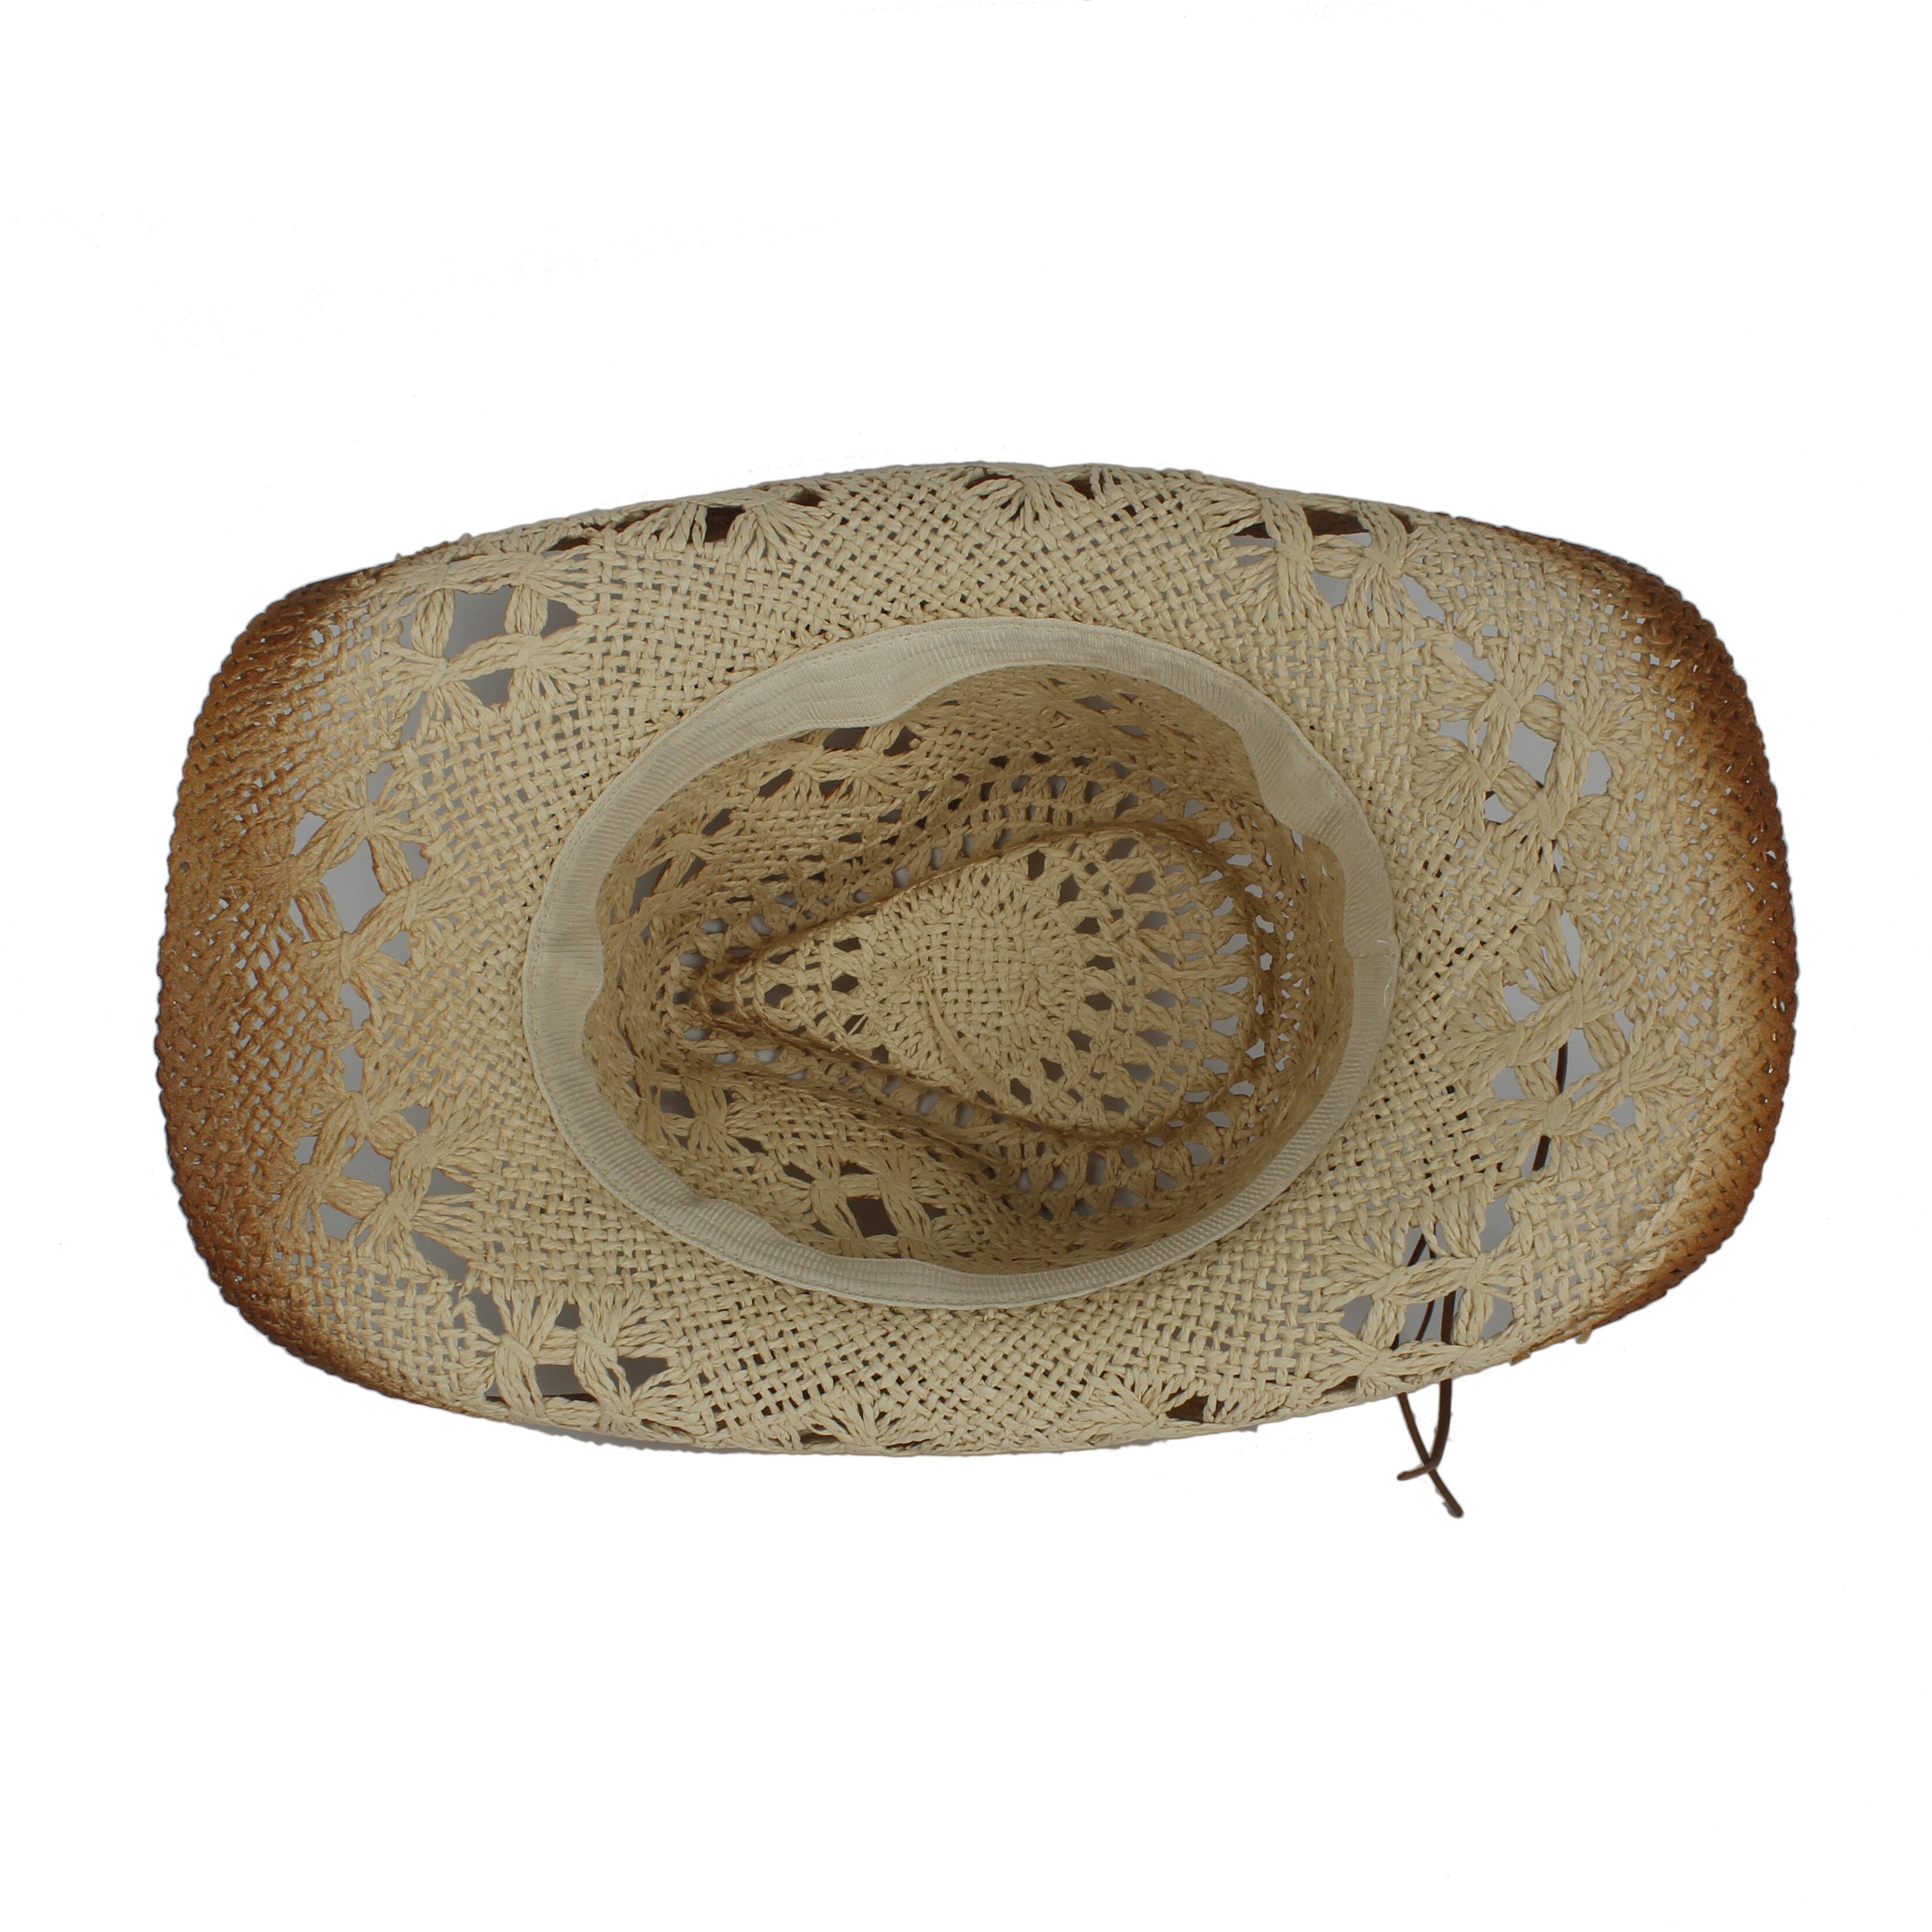 Halm hule vestlige cowboy hat kvinder mænd handmadepunk sombrero hombre strand cowgirl jazz sol hat størrelse 56-58cm